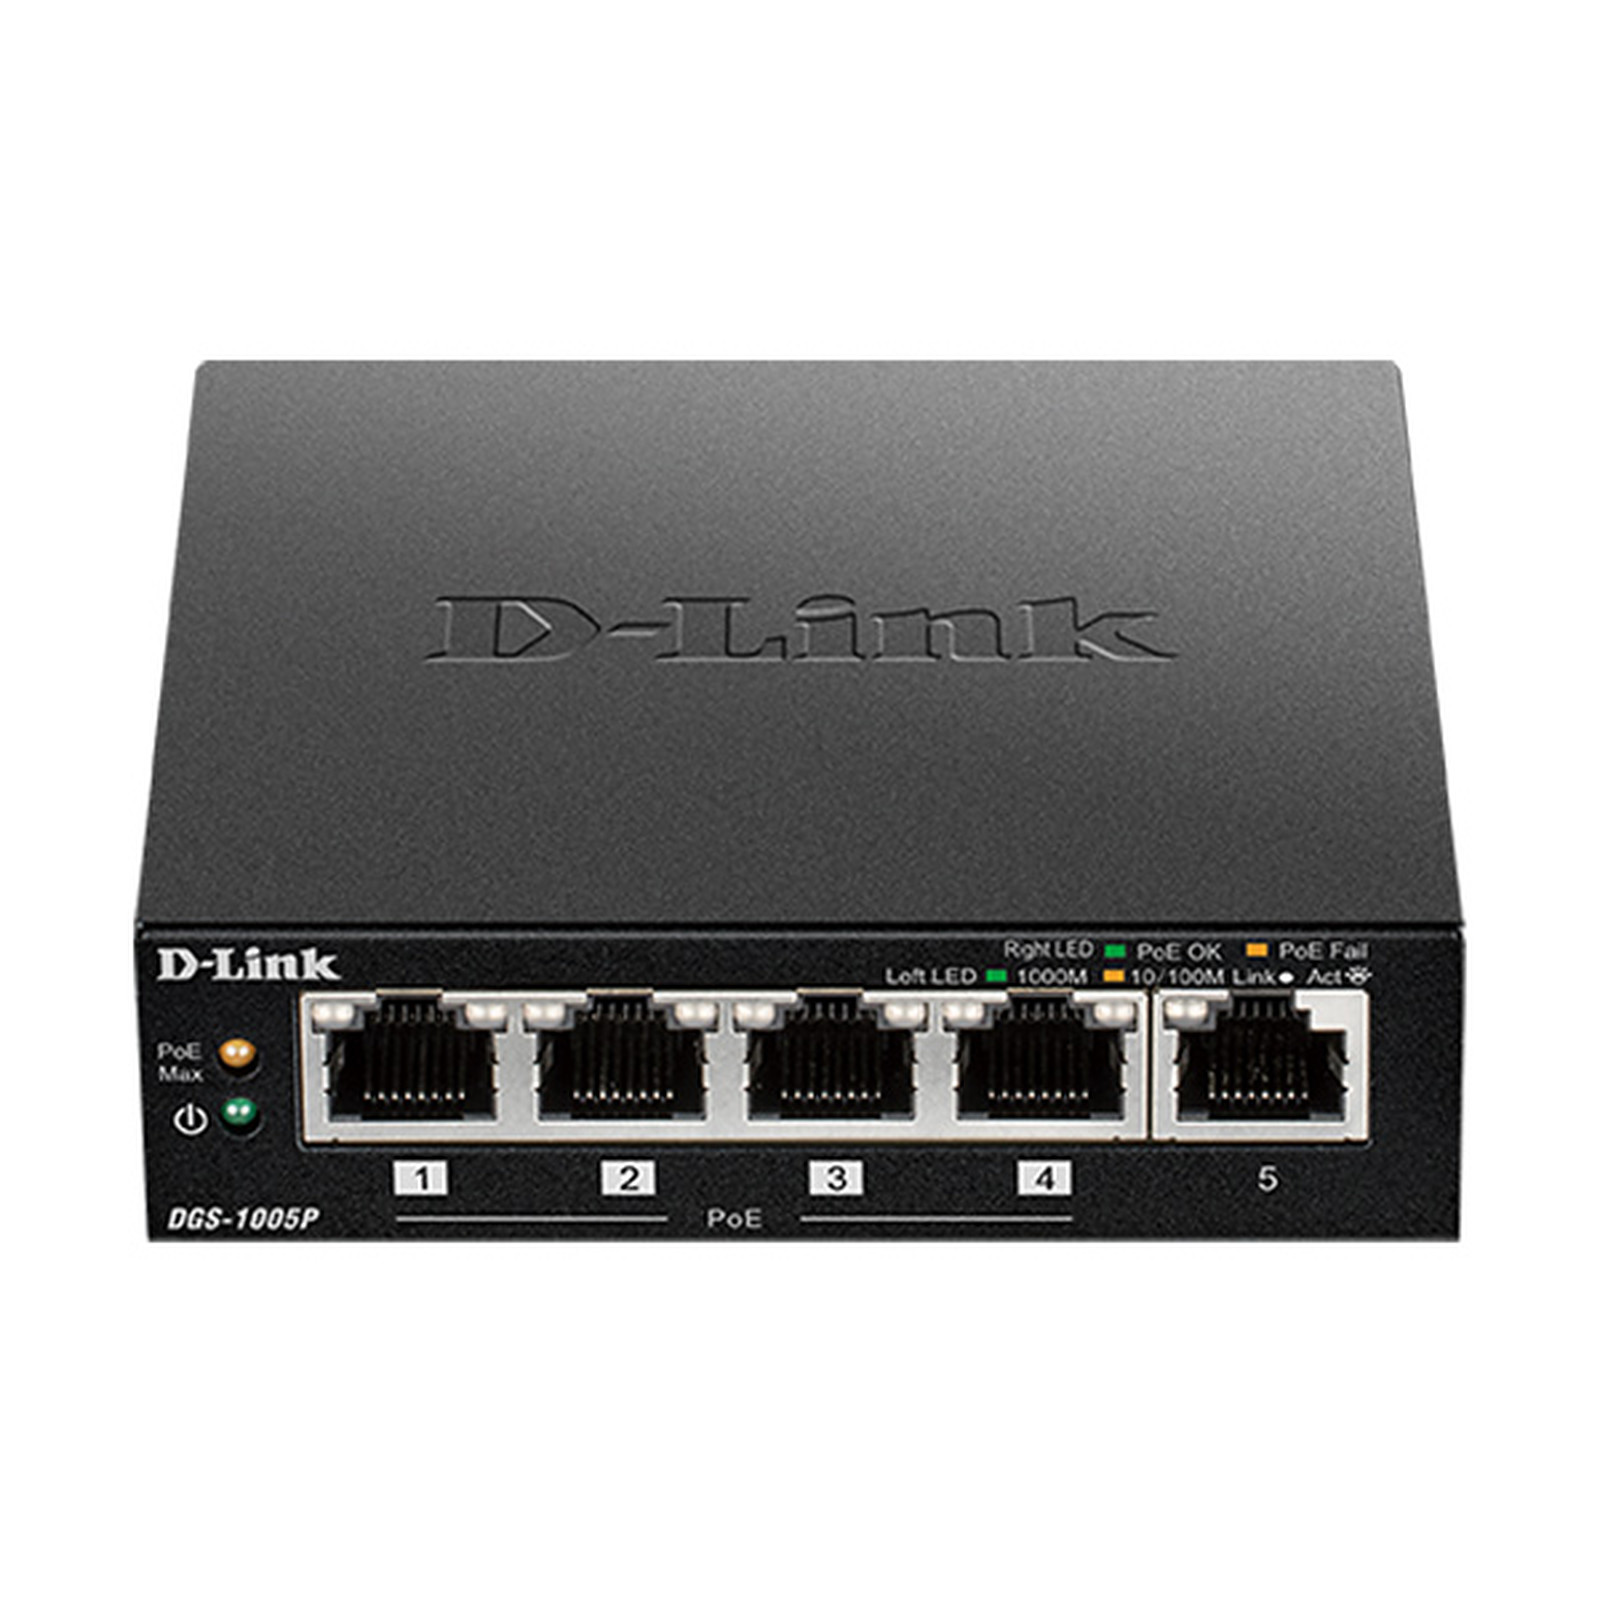 D-Link DGS-1005P - Switch D-Link